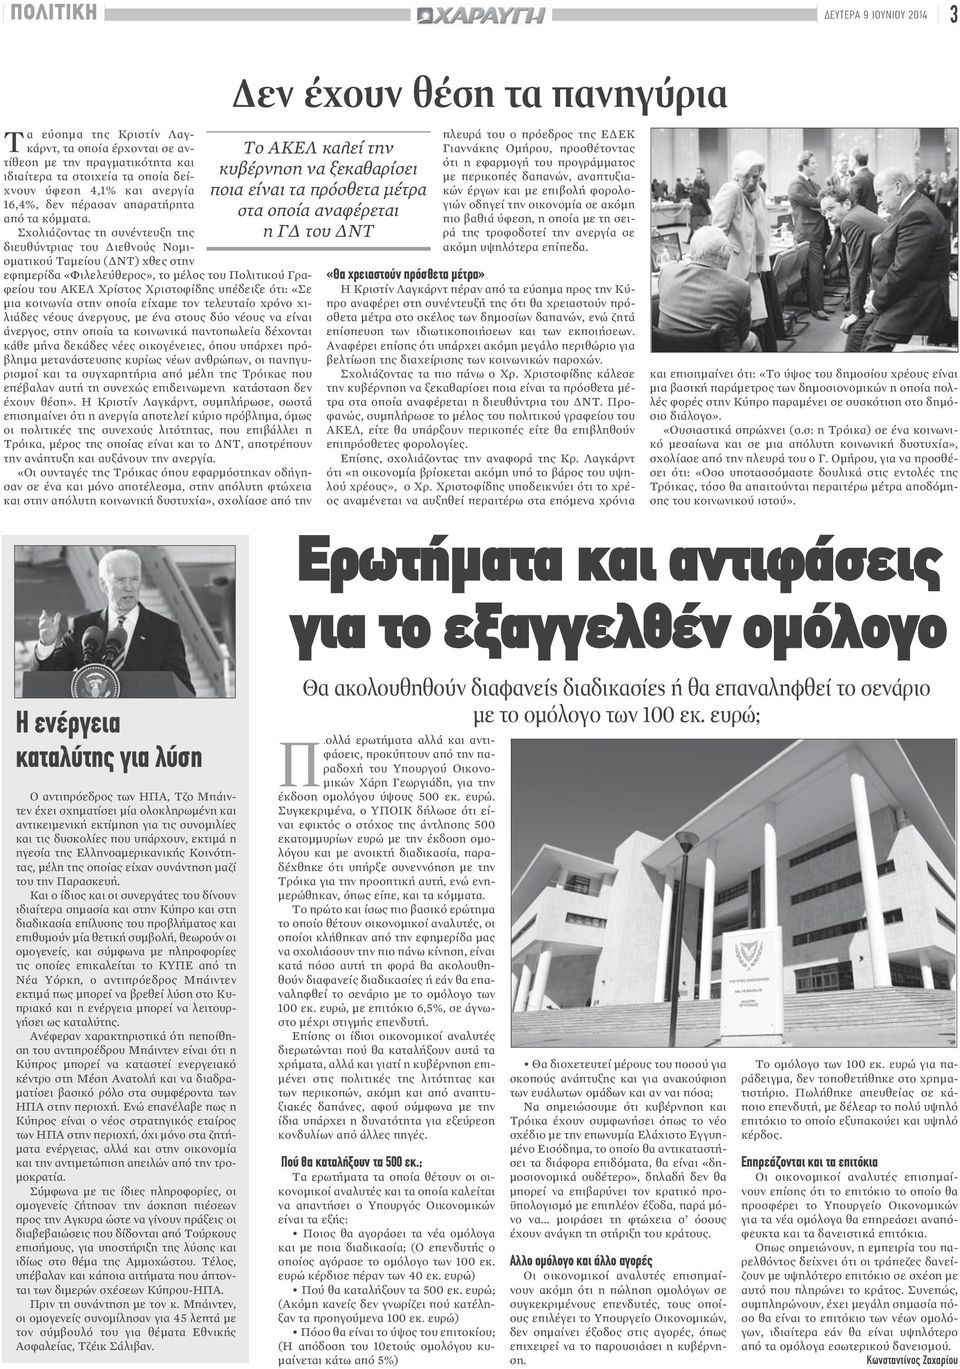 Σχολιάζοντας τη συνέντευξη της διευθύντριας του Διεθνούς Νομισματικού Ταμείου (ΔΝΤ) χθες στην εφημερίδα «Φιλελεύθερος», το μέλος του Πολιτικού Γραφείου του ΑΚΕΛ Χρίστος Χριστοφίδης υπέδειξε ότι: «Σε